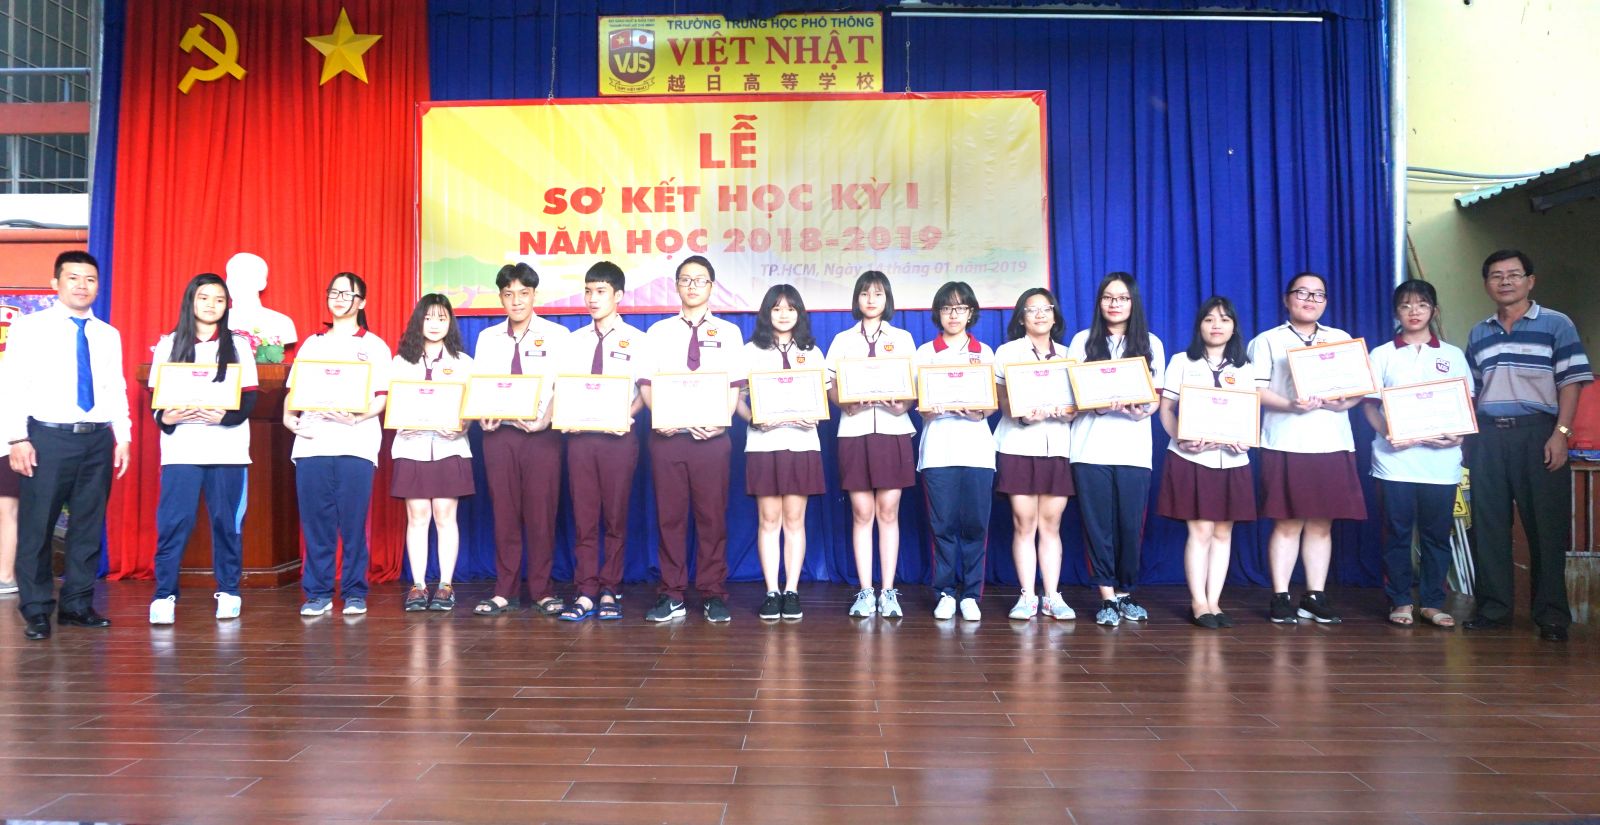 Các bạn học sinh trường THPT VIệt Nhật nhận Khen thưởng học sinh có kết quả học tập và rèn luyện tốt Học kỳ I 2018-2019